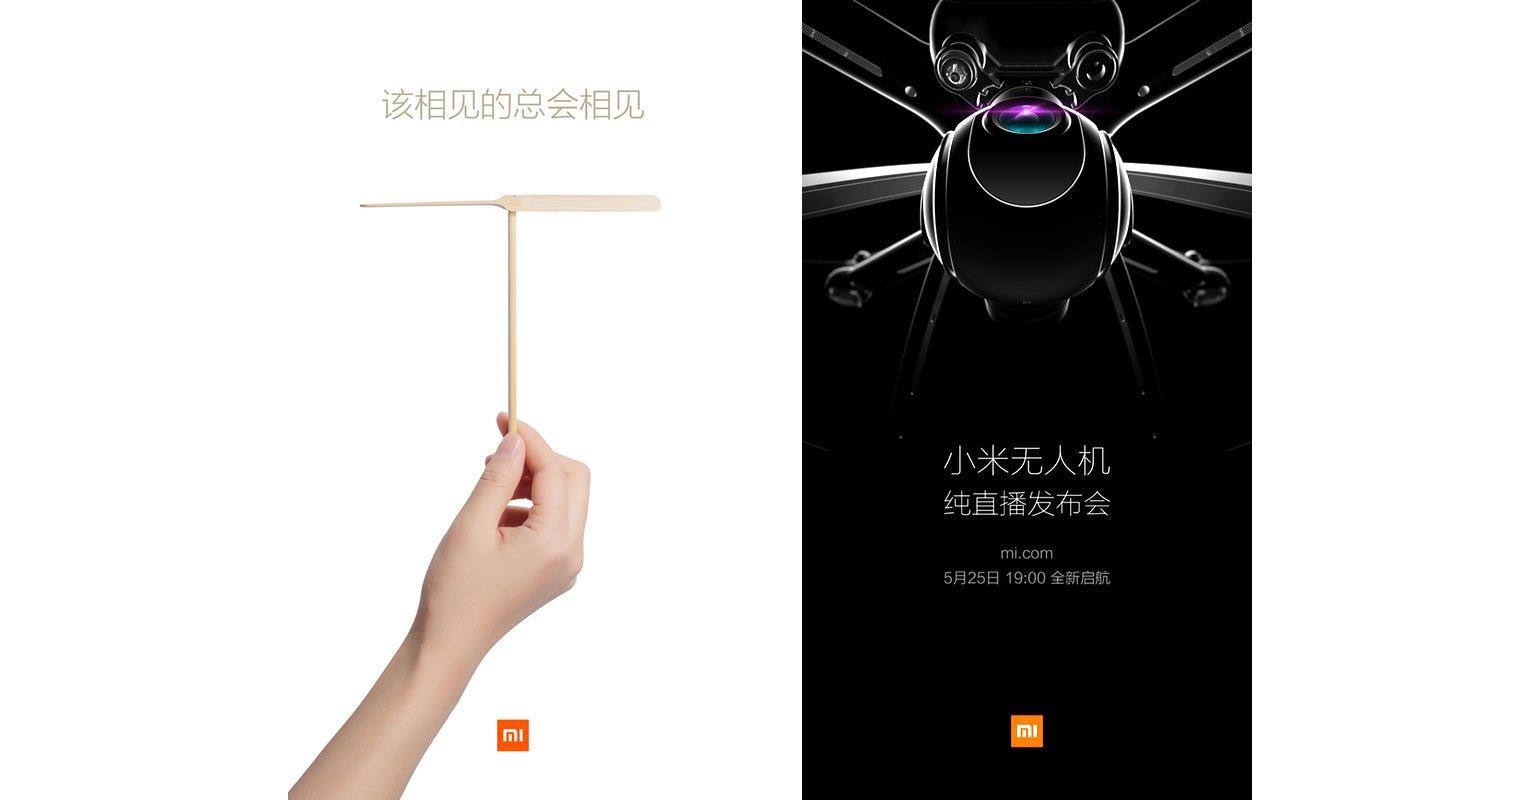 Xiaomi zal op 25 mei Mi Drone lanceren met ingebouwde 4K camera